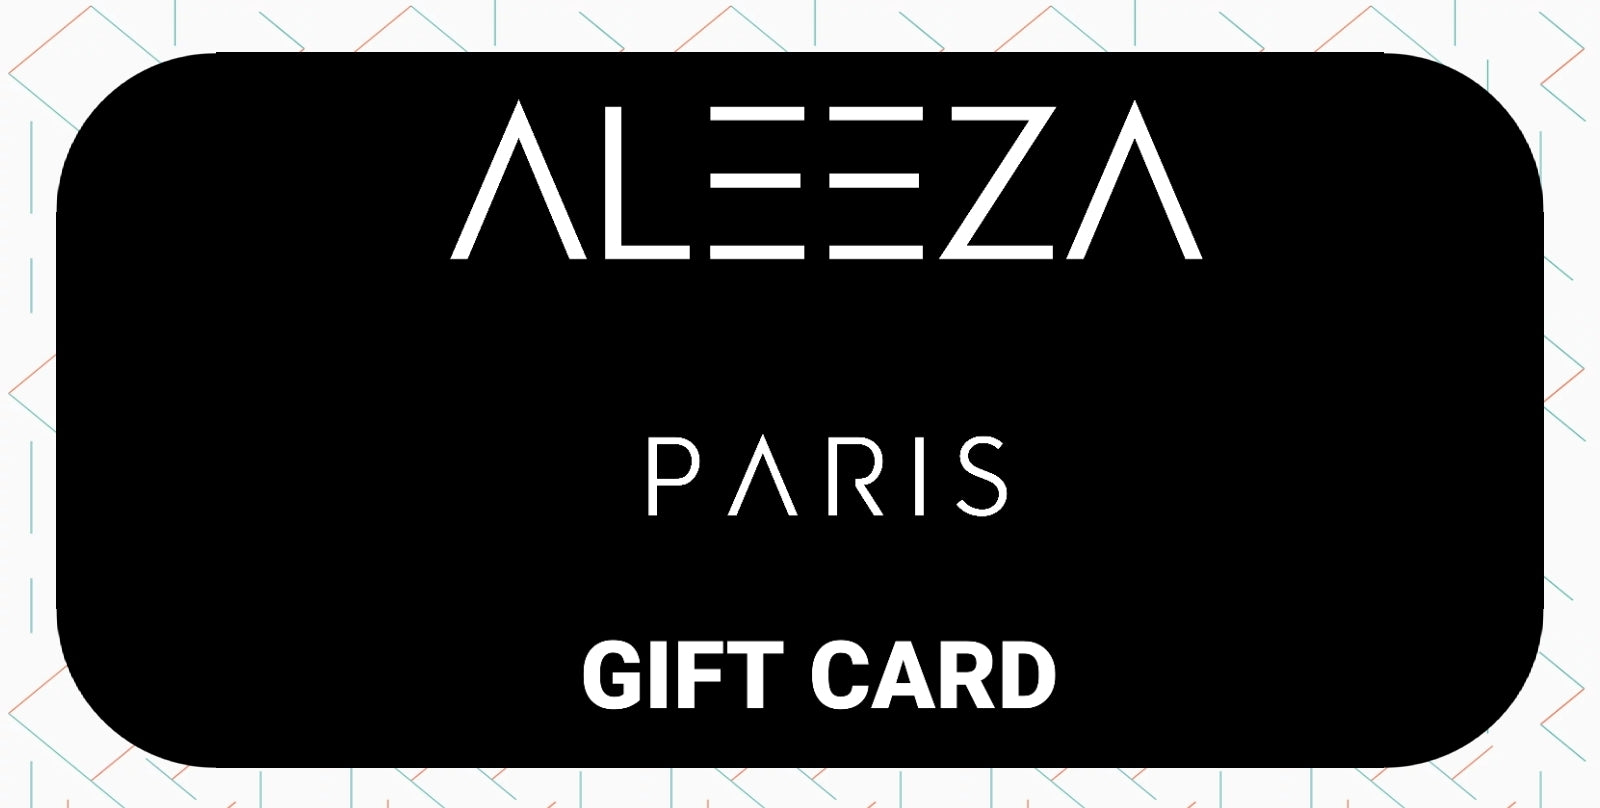 Aleeza Paris Gift Card